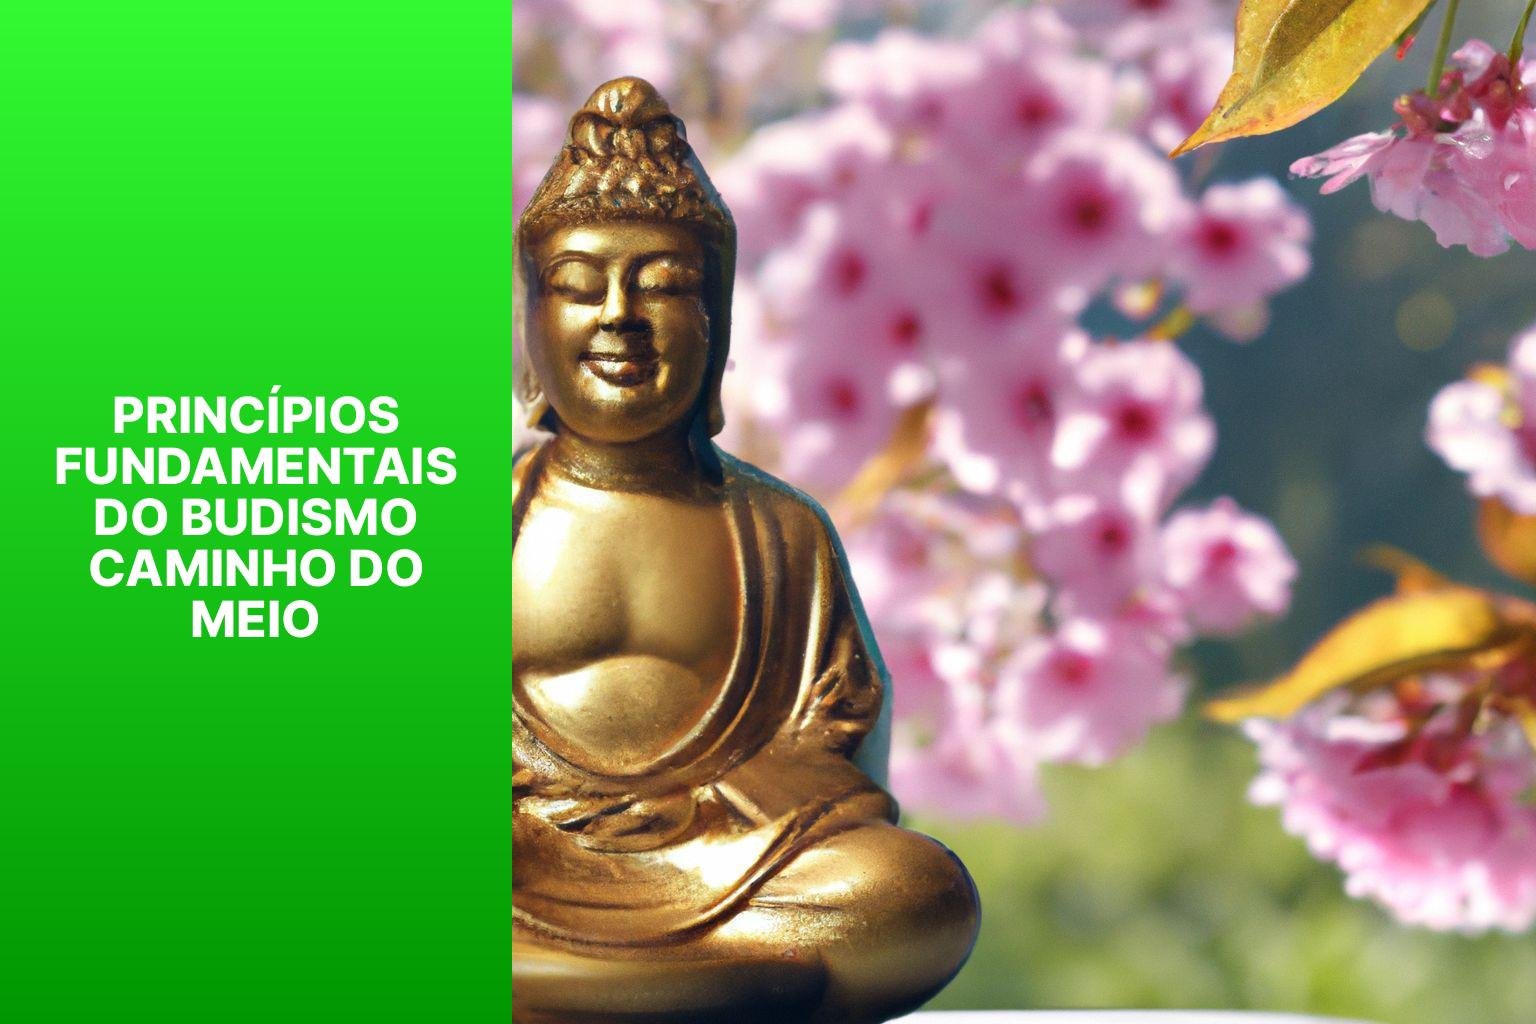 Princípios Fundamentais do Budismo Caminho do Meio - Budismo Caminho Do Meio 